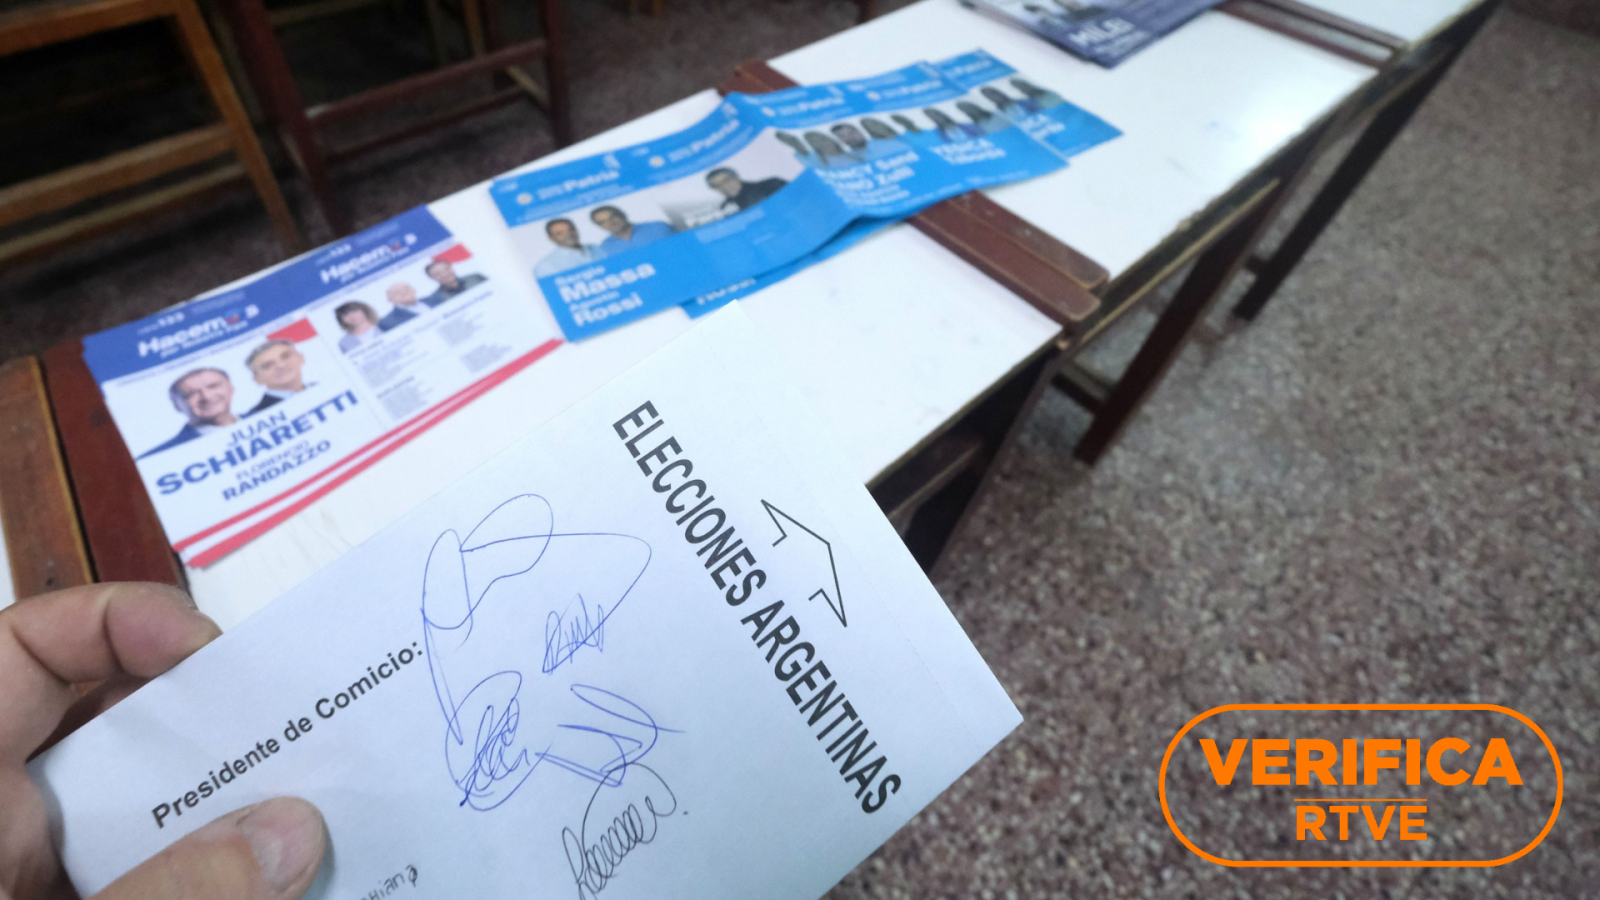 Verificamos la jornada electoral en Argentina, con el sello de VerificaRTVE